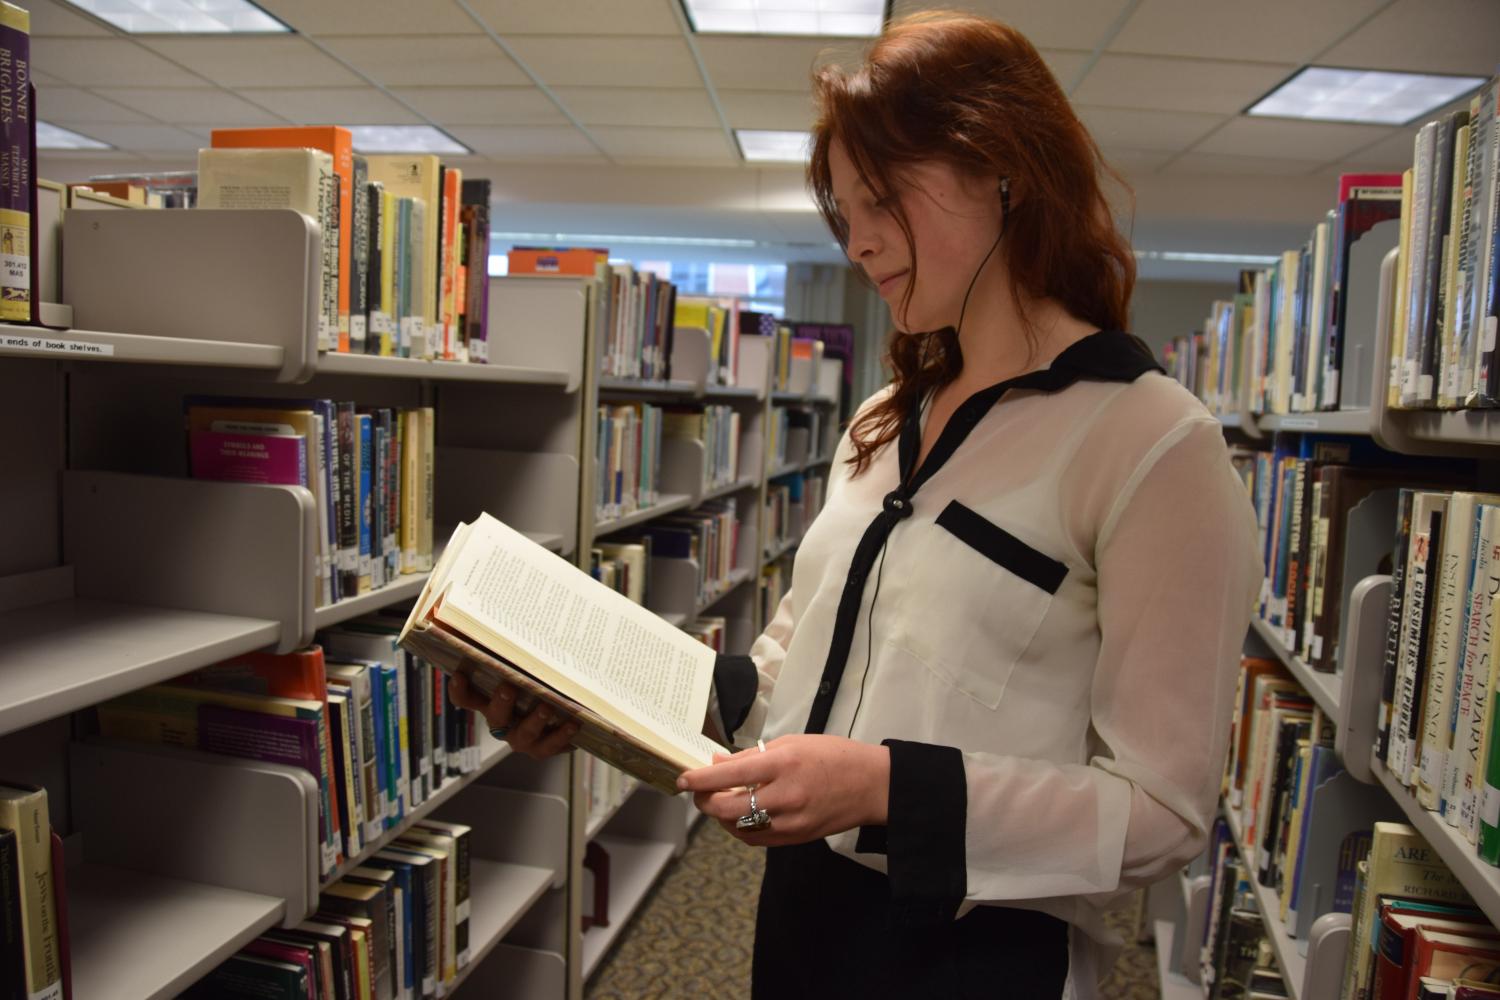 Senior Zosha Skinner spends time reading in the Library Media Center between classes.